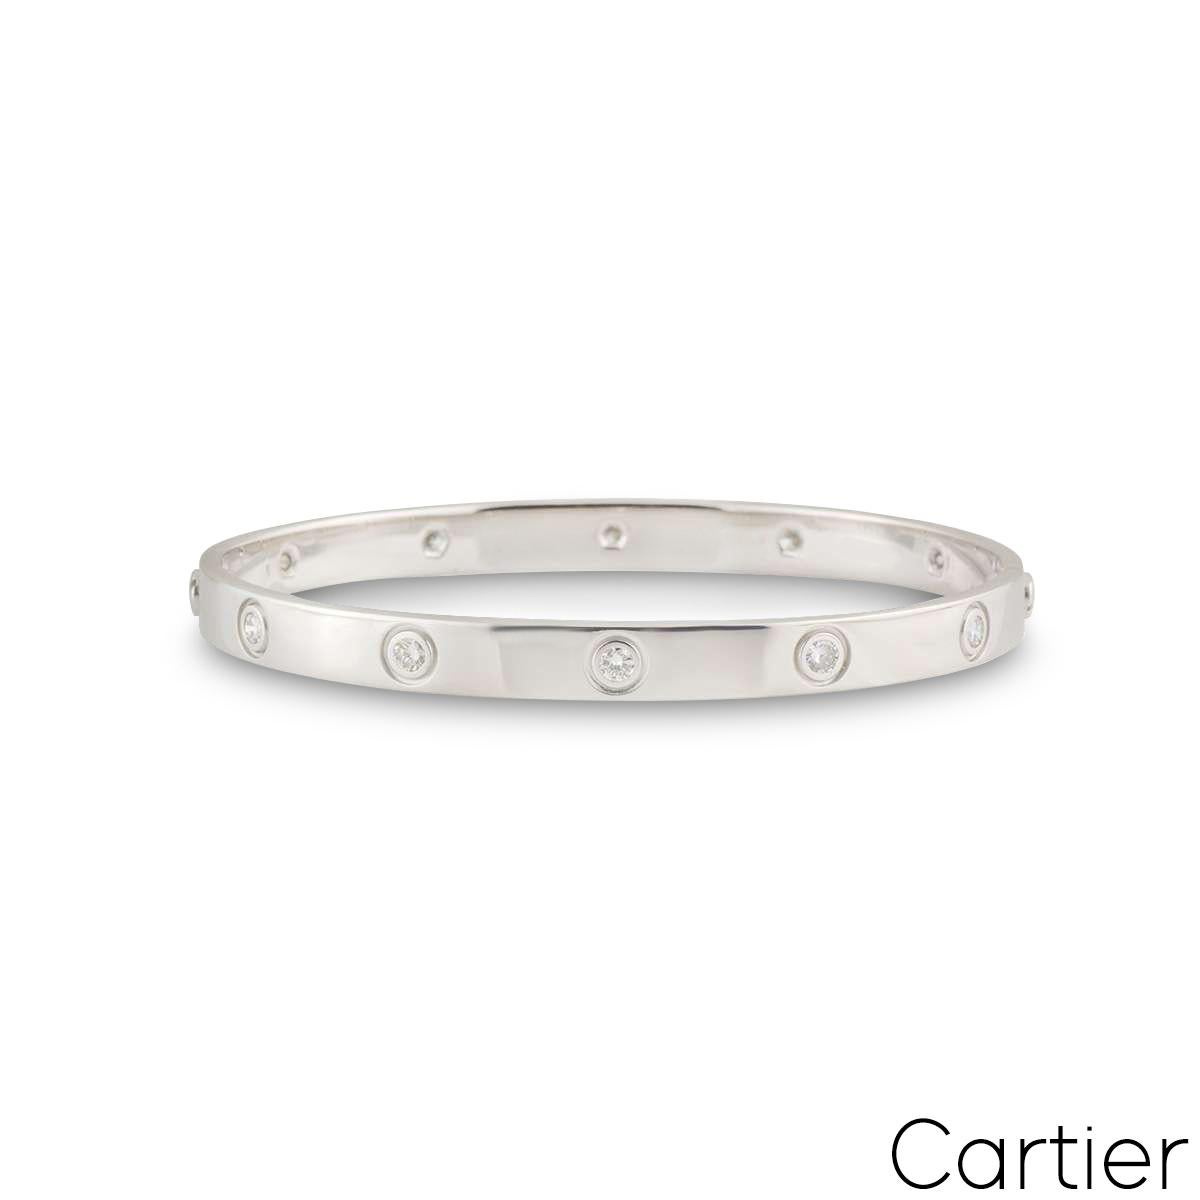 Un bracelet Cartier en or blanc 18 carats plein de diamants de la collection Love. Le bracelet est serti de 10 diamants ronds de taille brillant circulant sur le bord extérieur dans un sertissage de type rubover. Le bracelet est de taille 19 et